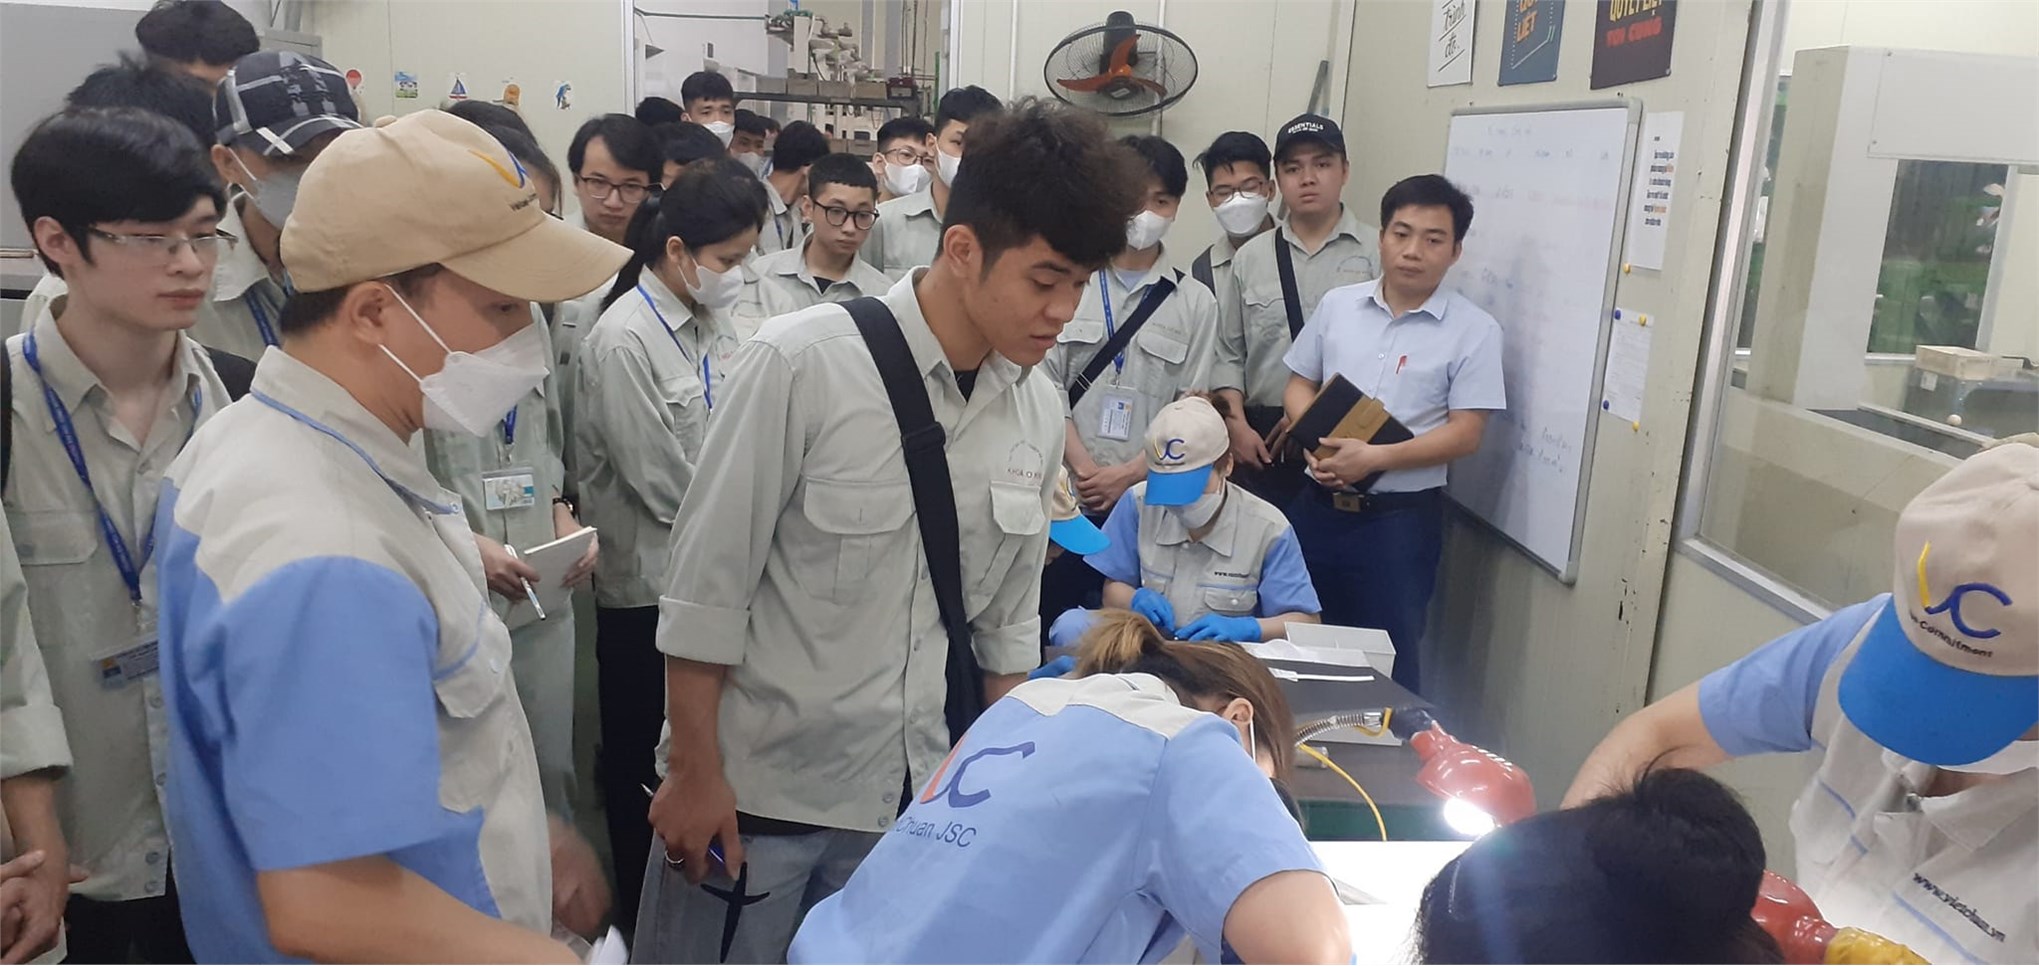 Khoa Cơ khí tổ chức tham quan thực tế cho sinh viên lớp khuôn mẫu K15 tại Công ty cổ phần Việt Chuẩn.